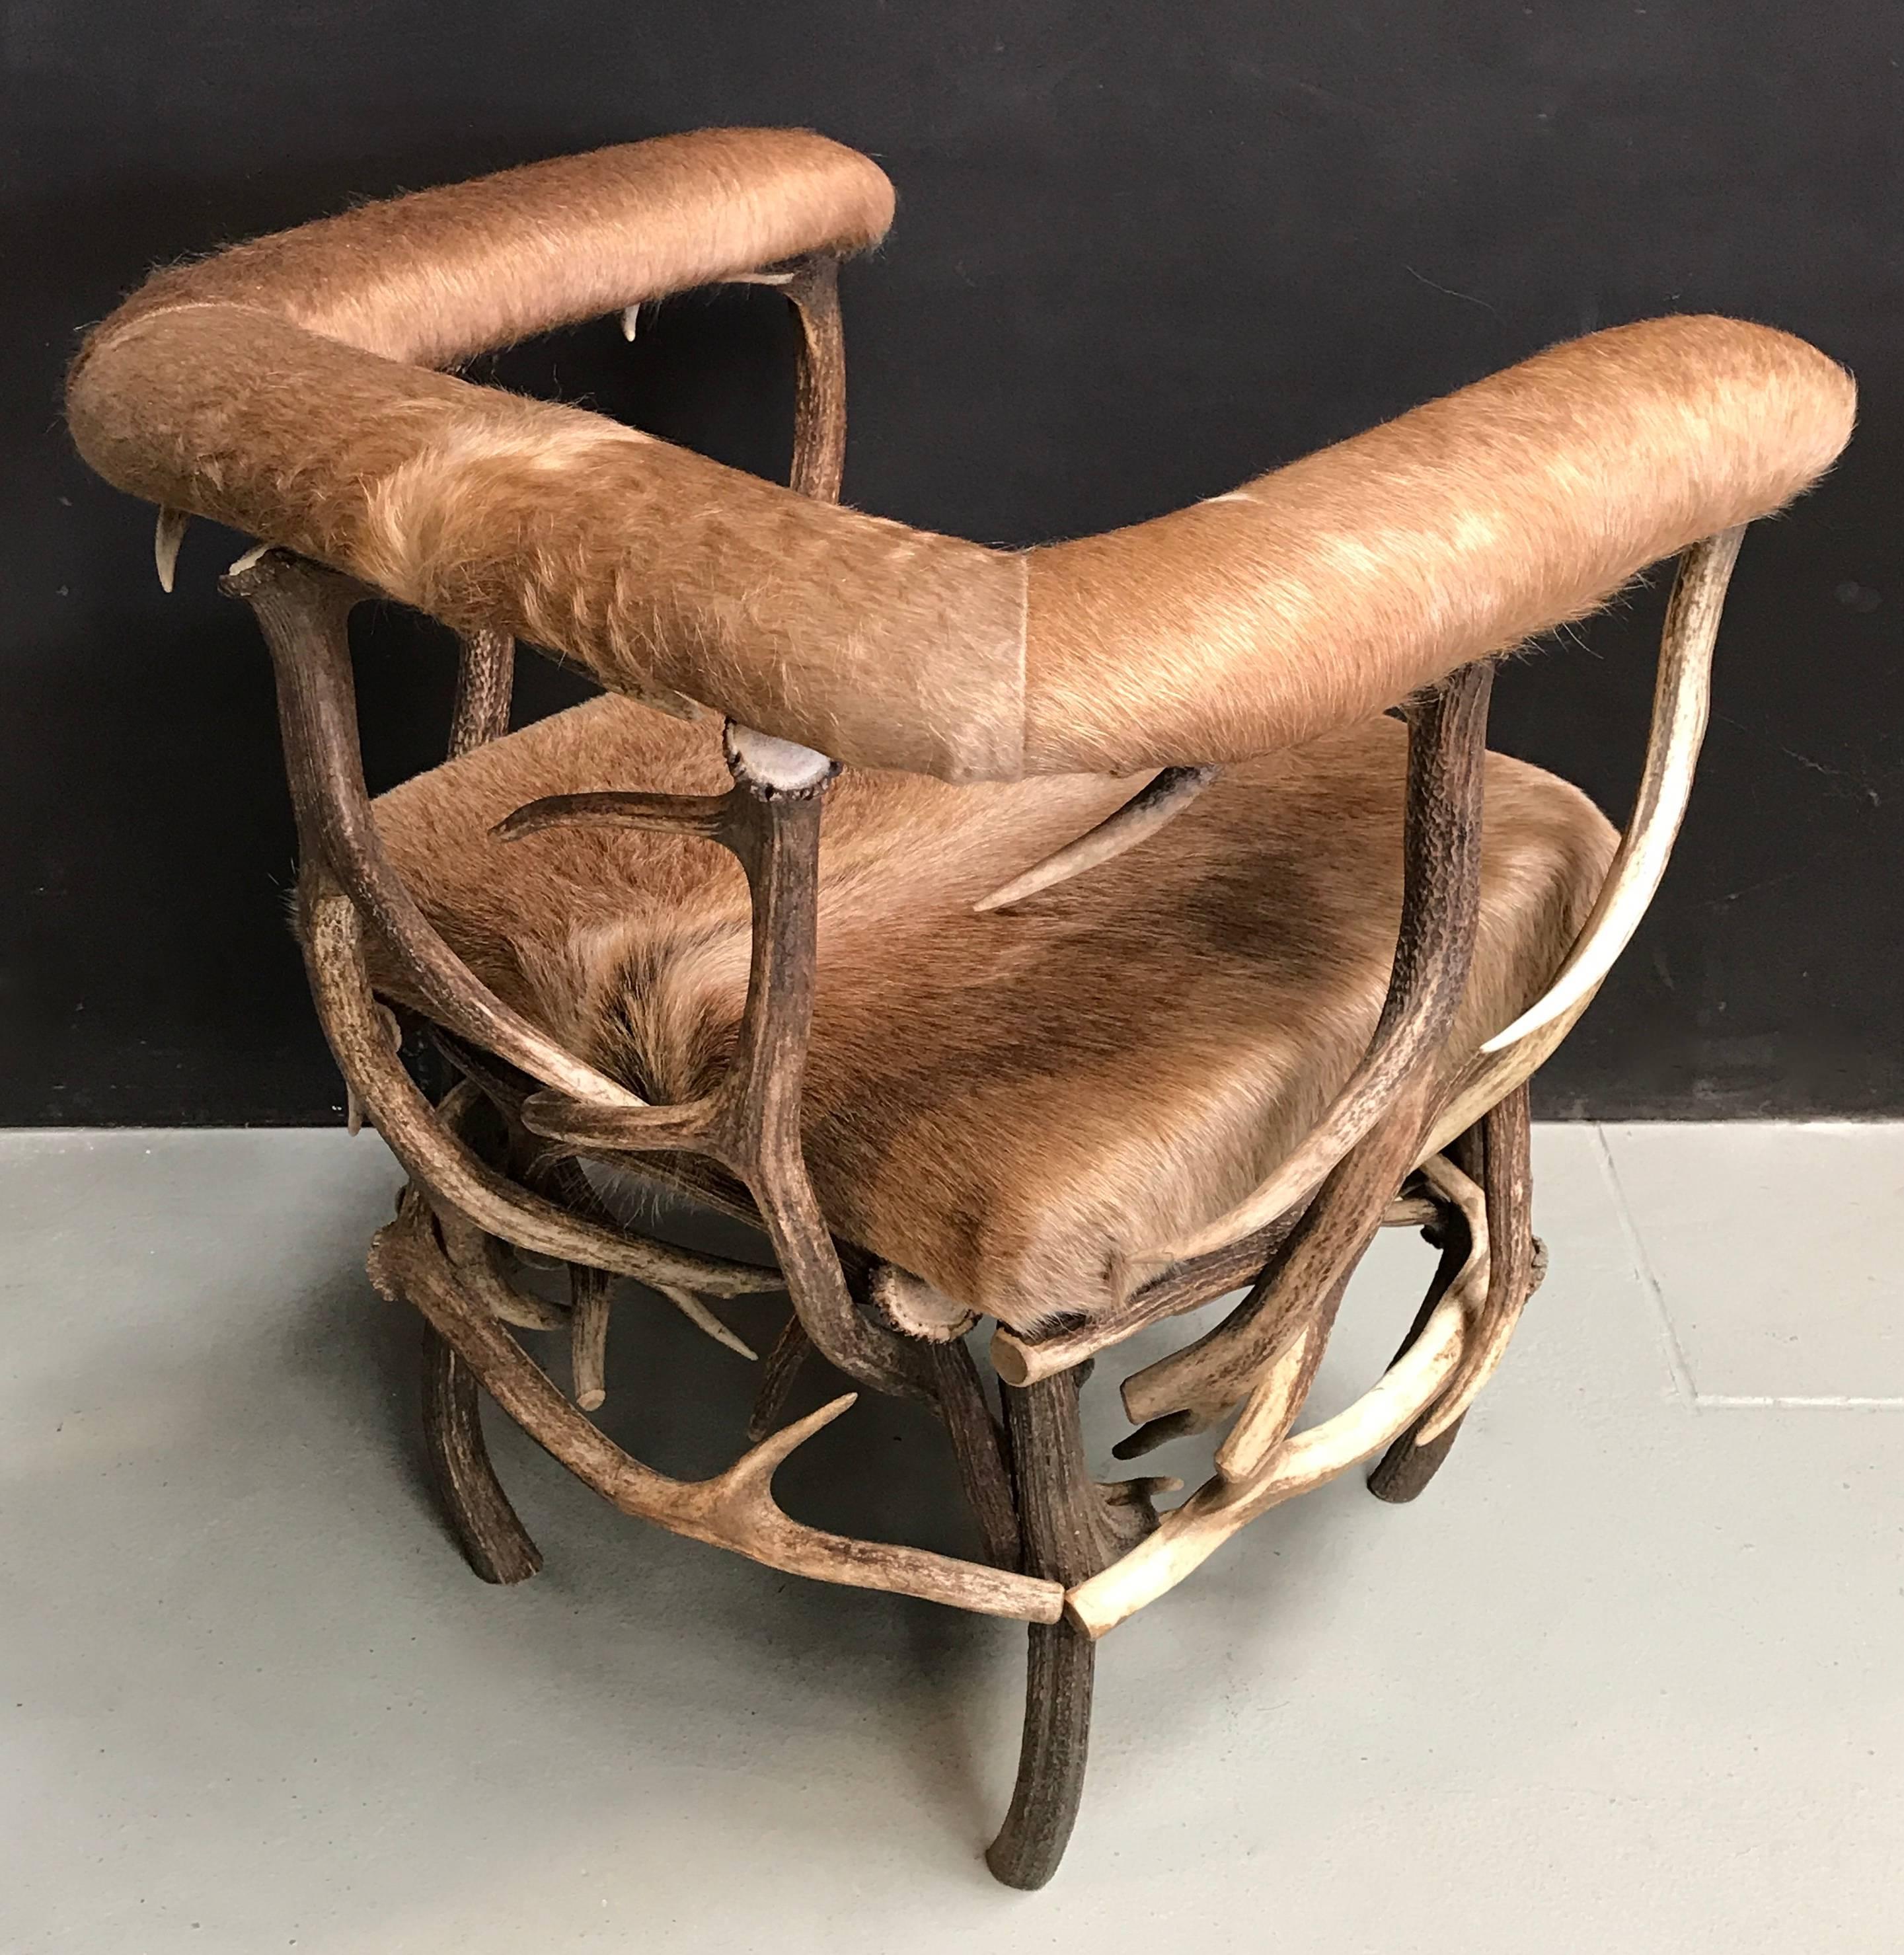 Dutch Antler Chair with Ecuadorian Cowhide